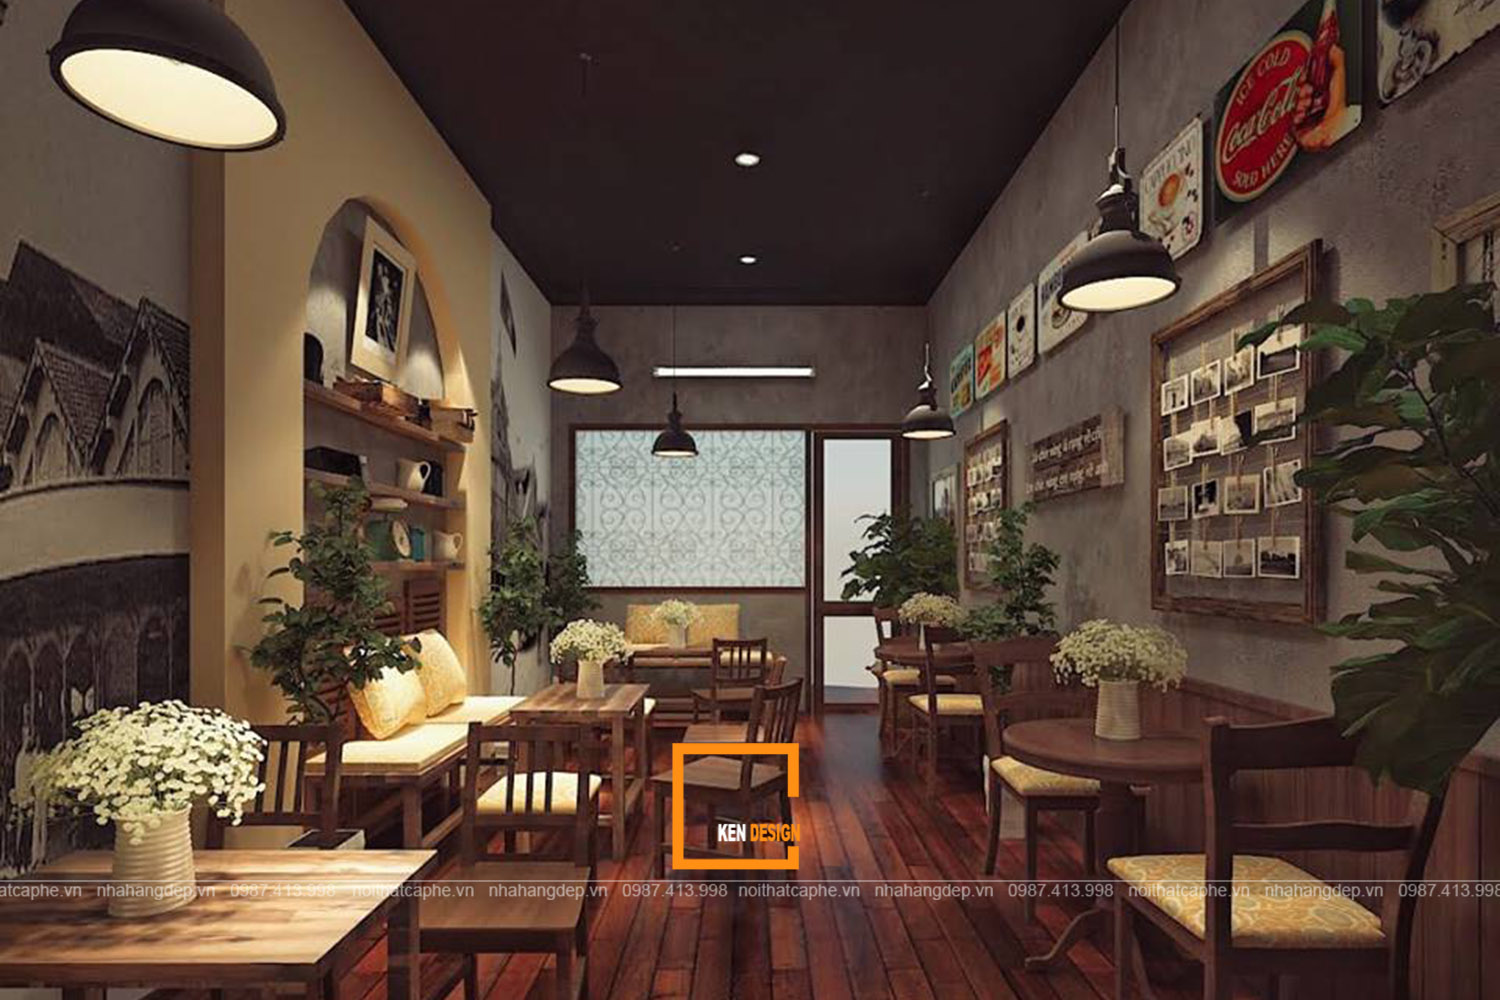 Mẫu thiết kế quán cafe nhỏ xinh